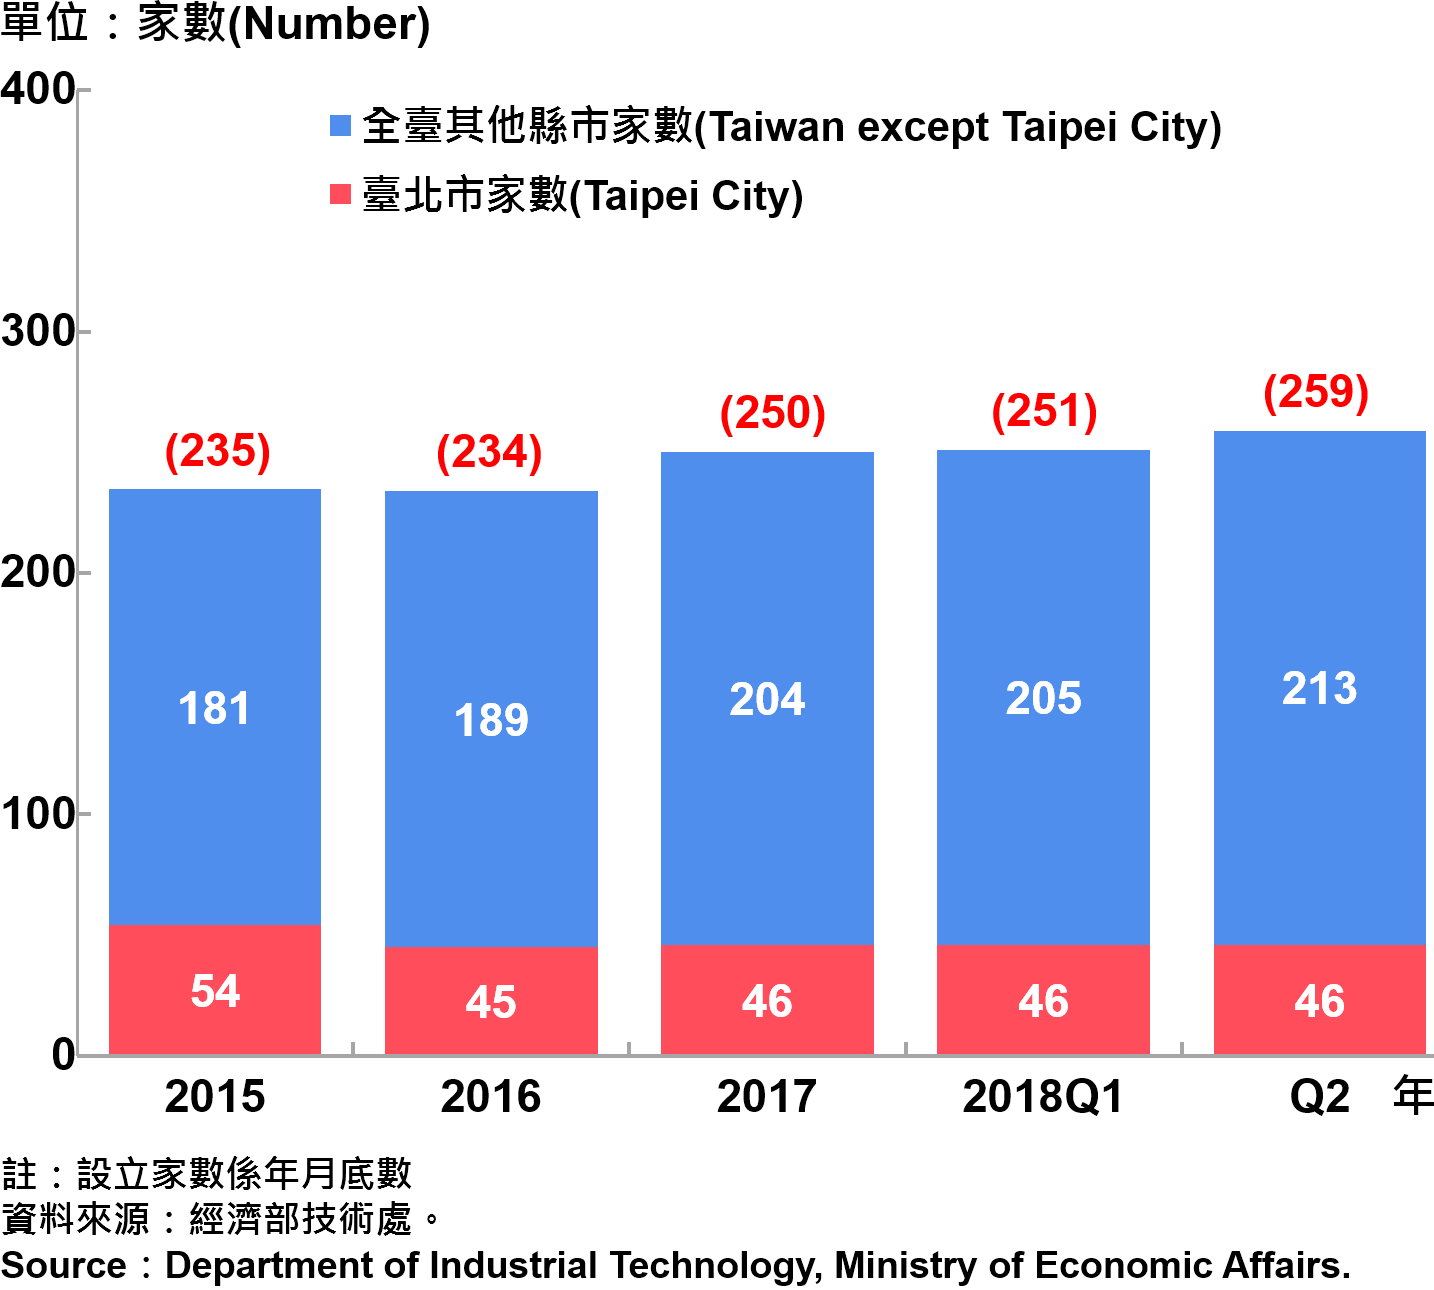 臺北市研發中心設立家數—2018Q2 Number of R&D Centers in Taipei City—2018Q2